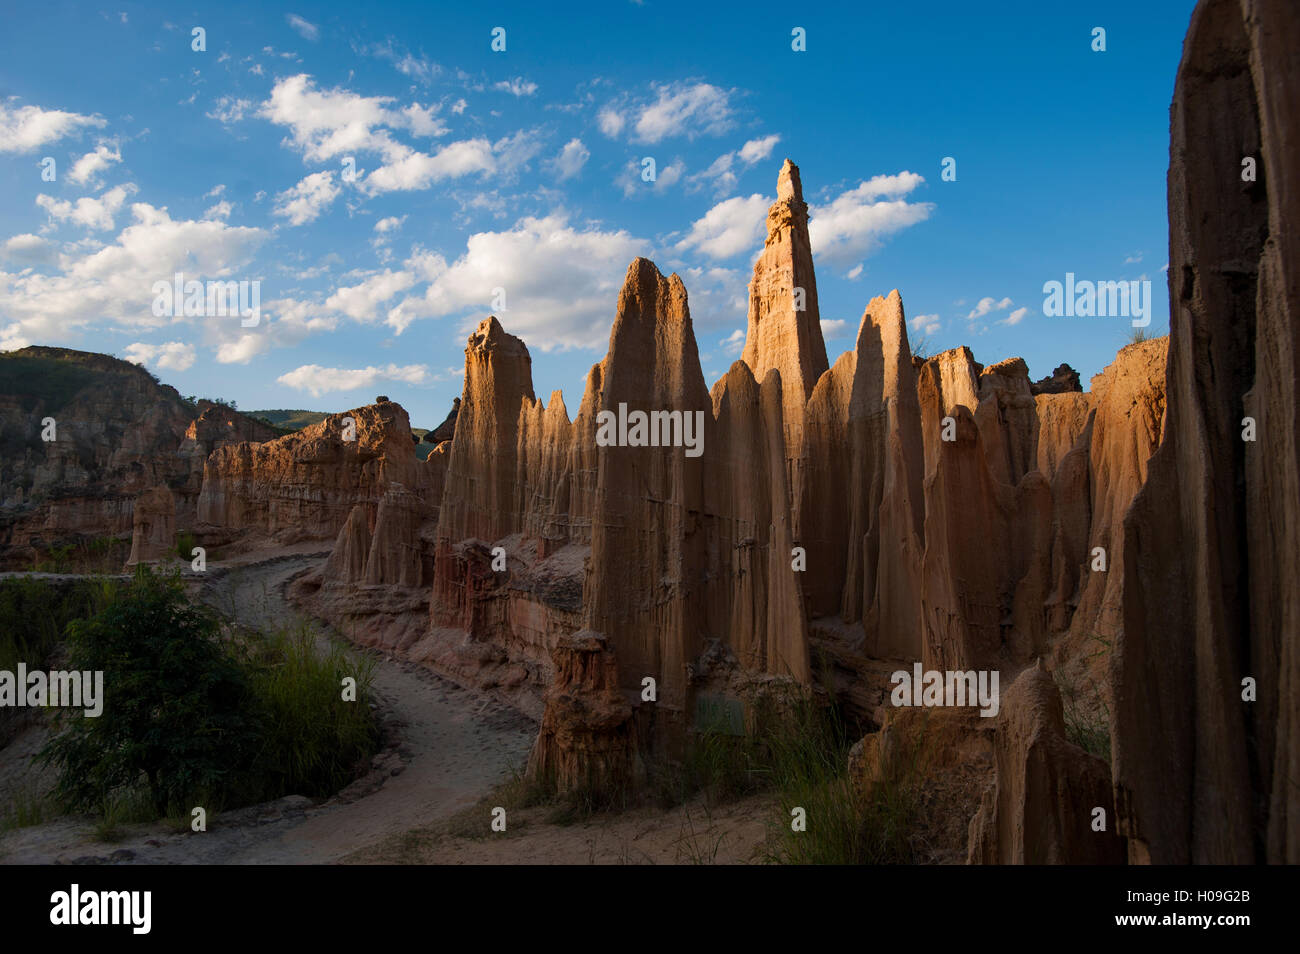 Il Yuanmou foresta di argilla in Cina è il meglio conservato esempio di questo tipo di paesaggio, Yuanmou, nella provincia dello Yunnan in Cina Foto Stock